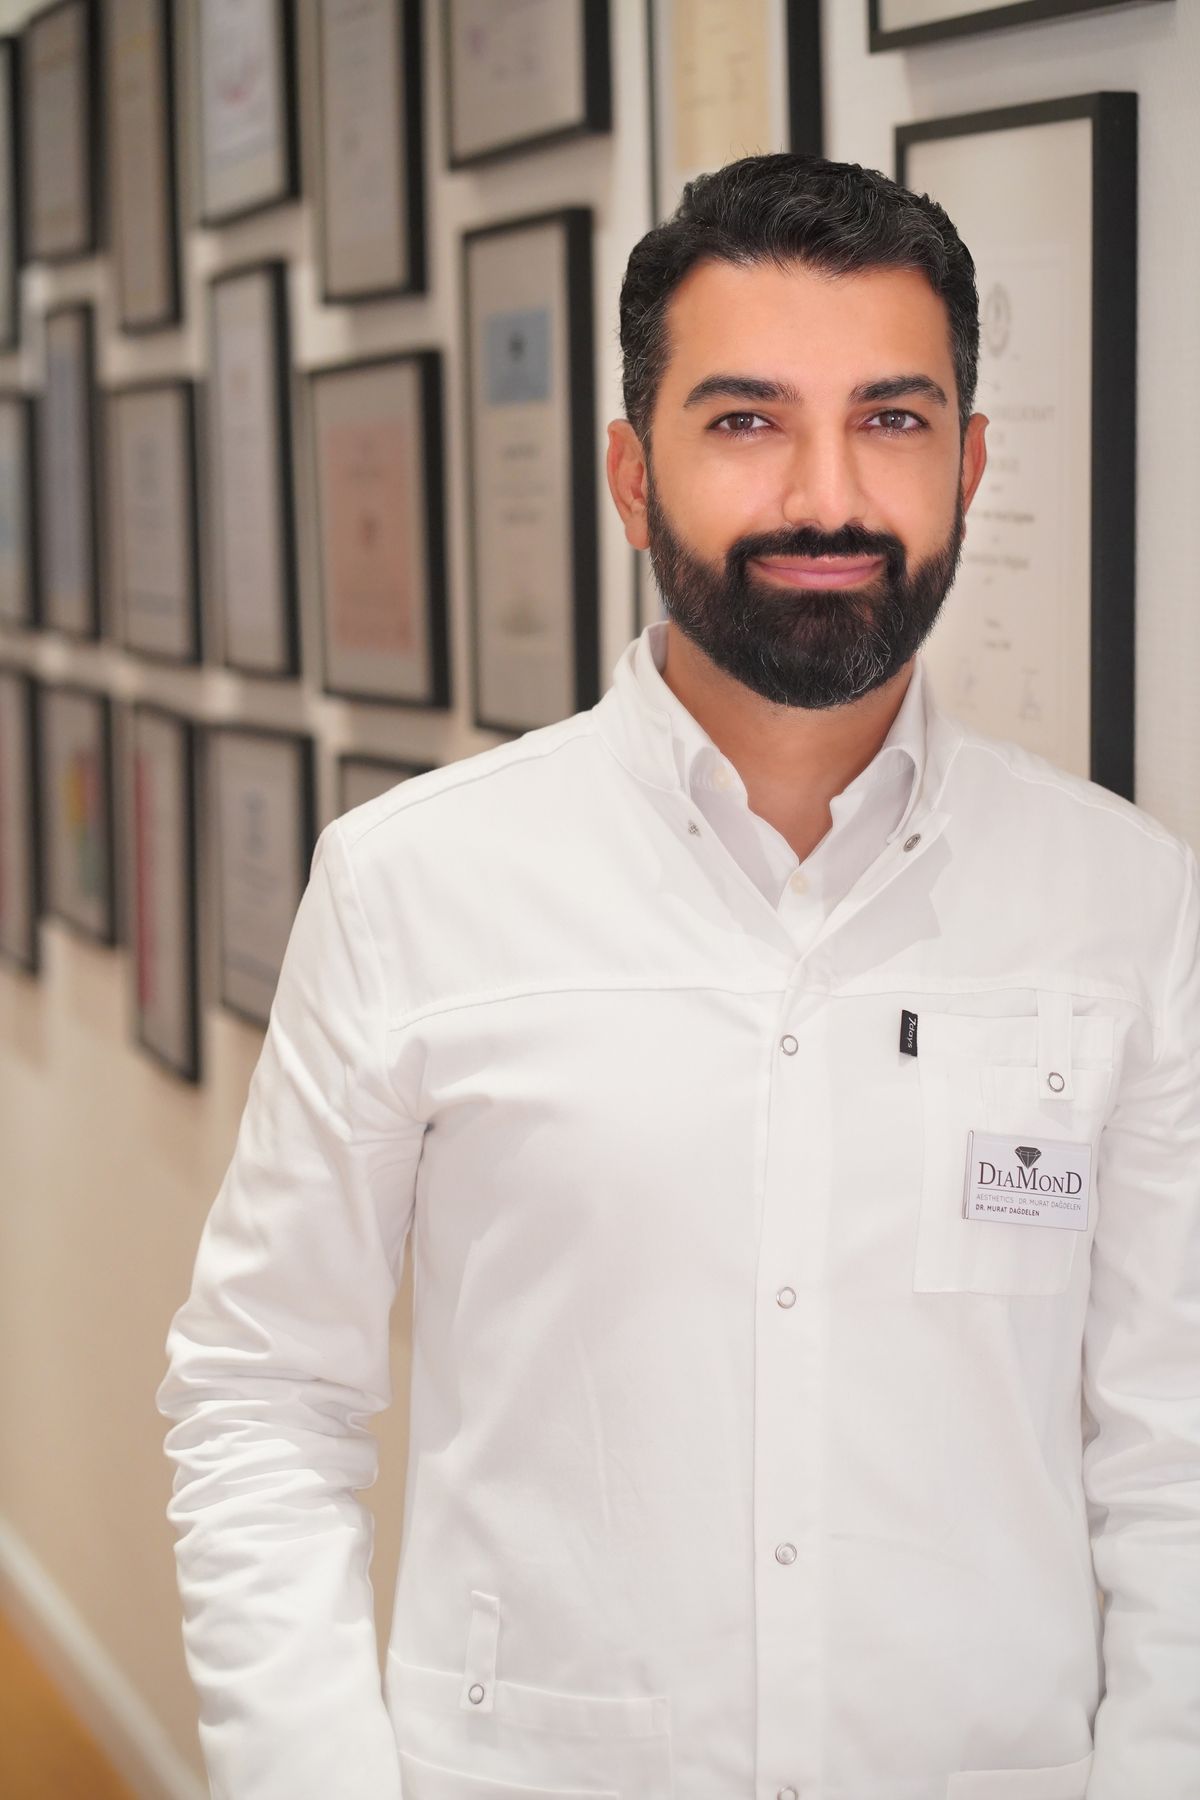 Dr. Murat Dağdelen, Facharzt für Plastische und Ästhetische Chirurgie und Gründer und Ärztlicher Direktor von DiaMonD Aesthetics in Düsseldorf.